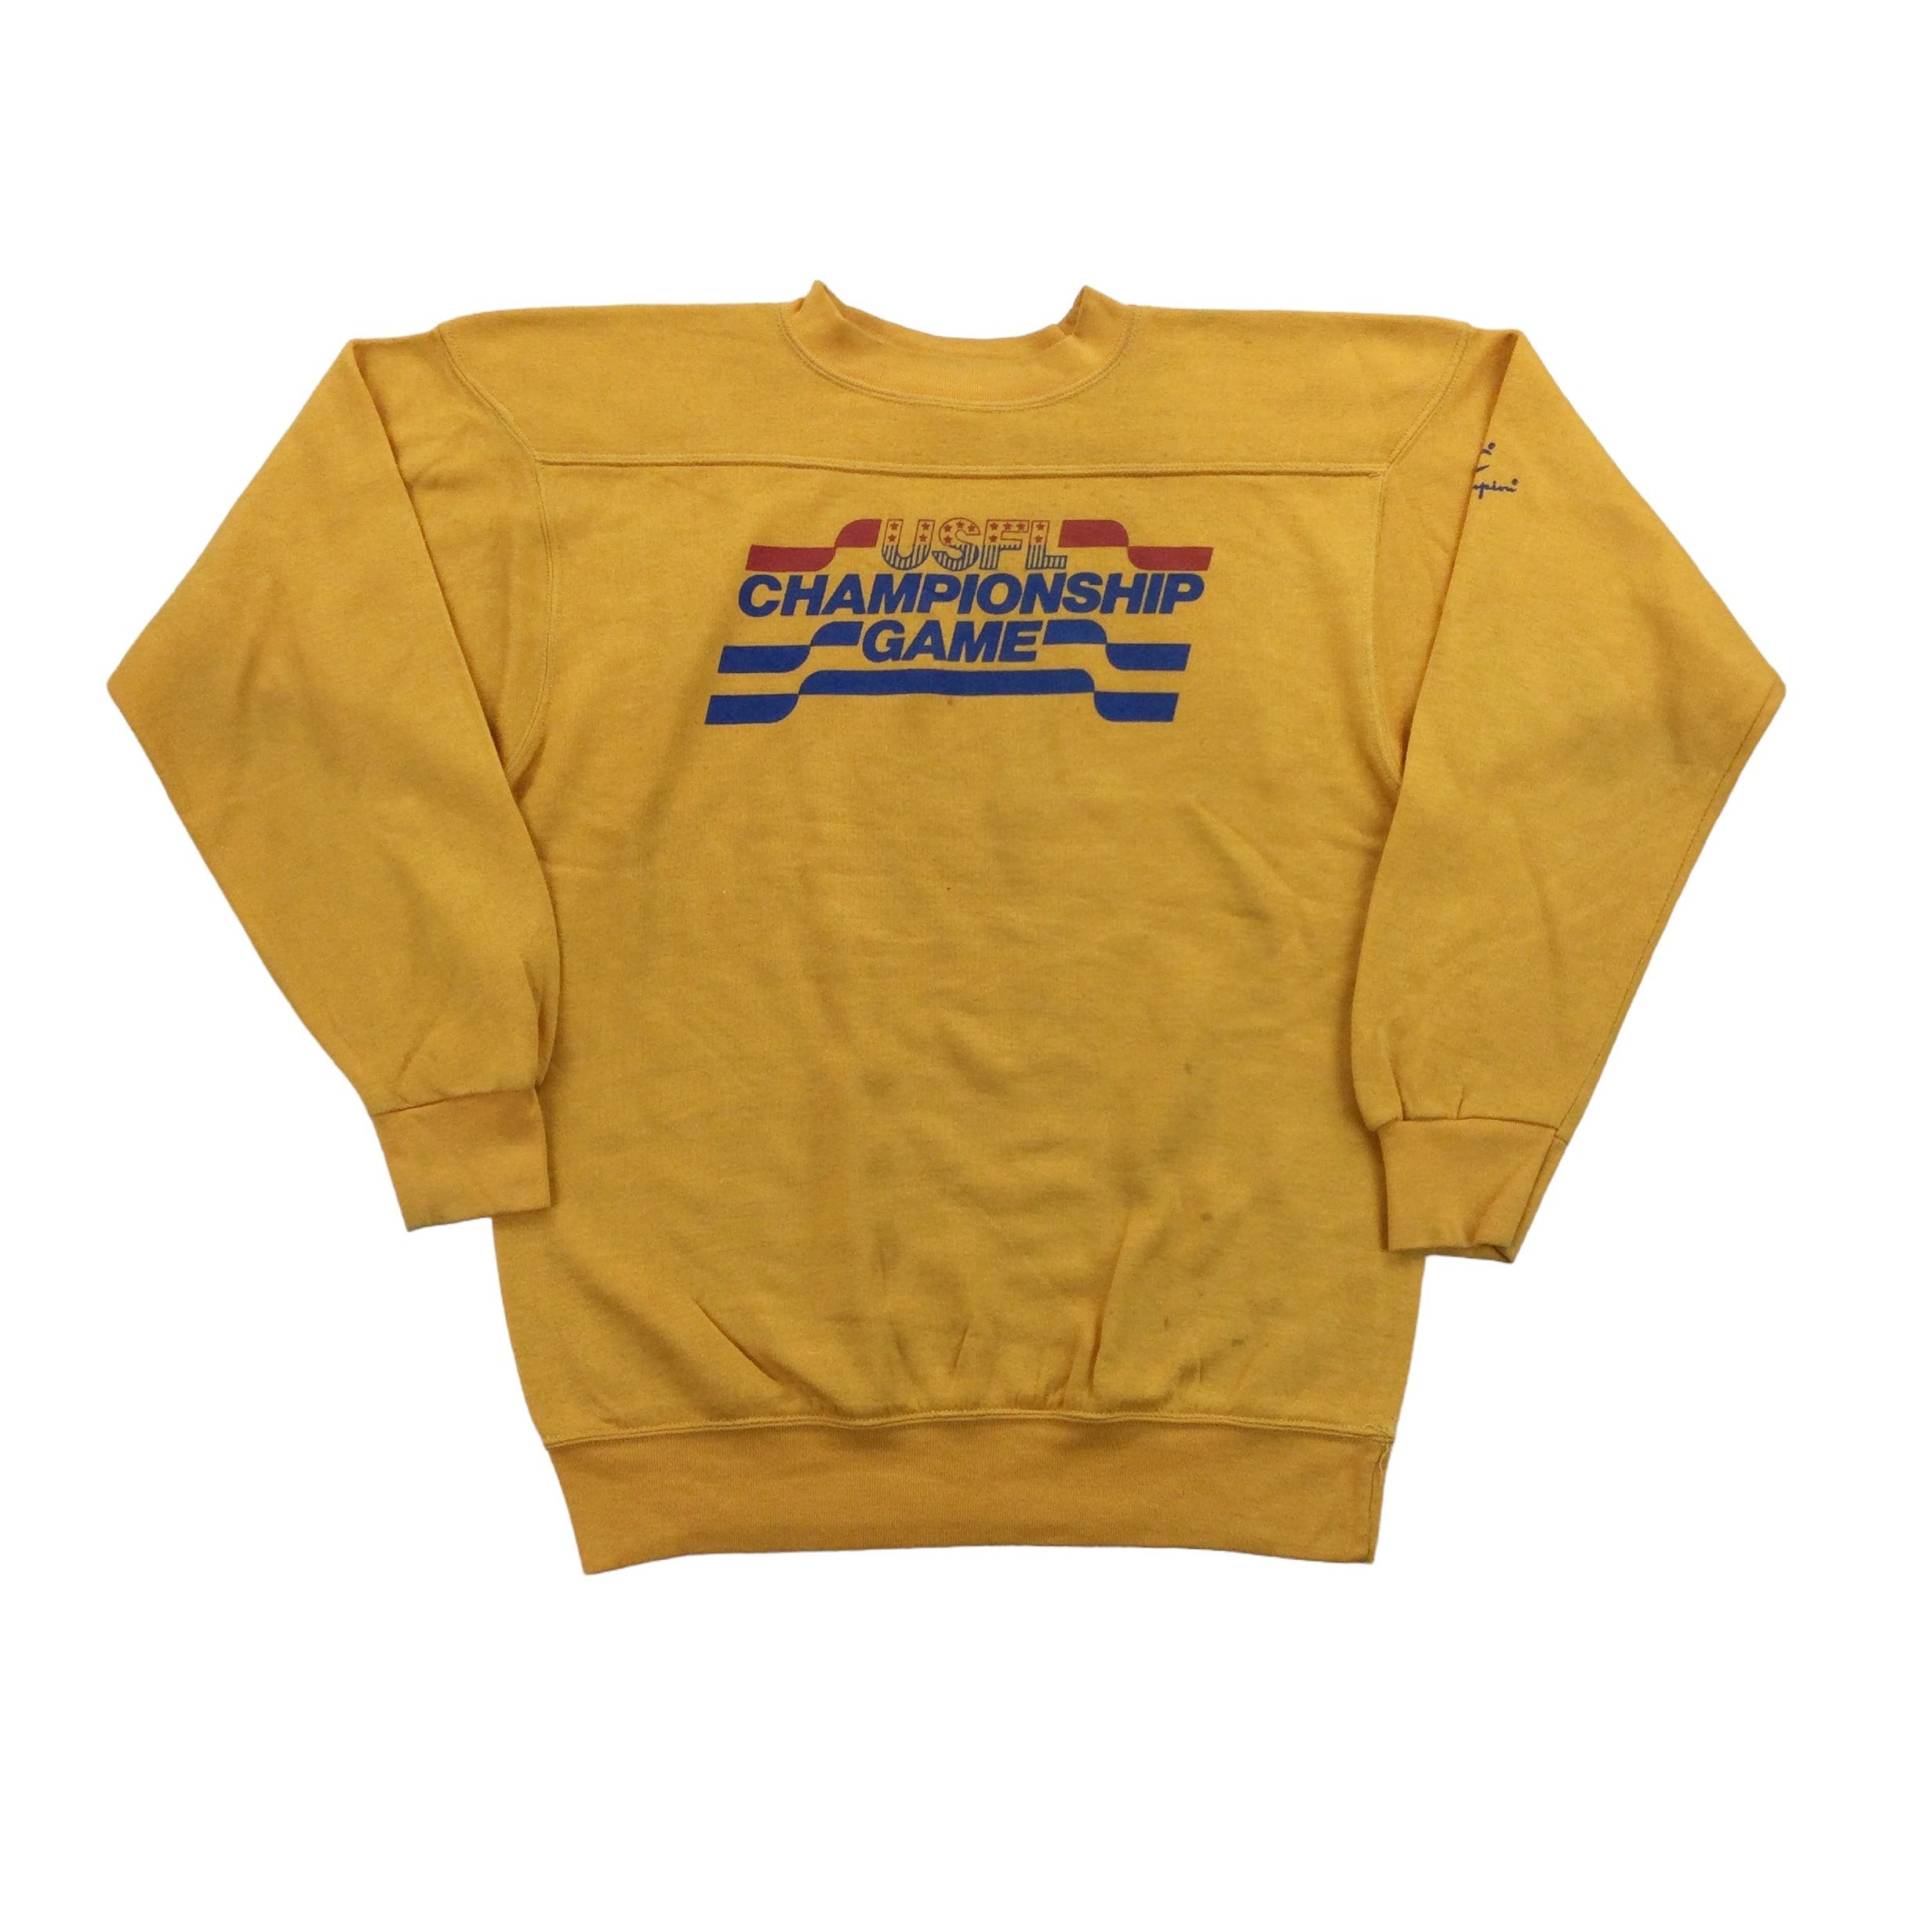 Vintage Champion Usfl Cup Spiel 80Er Jahre Sweatshirt - Große Größe Männer Pullover Männlich Gebraucht von aloisstudio